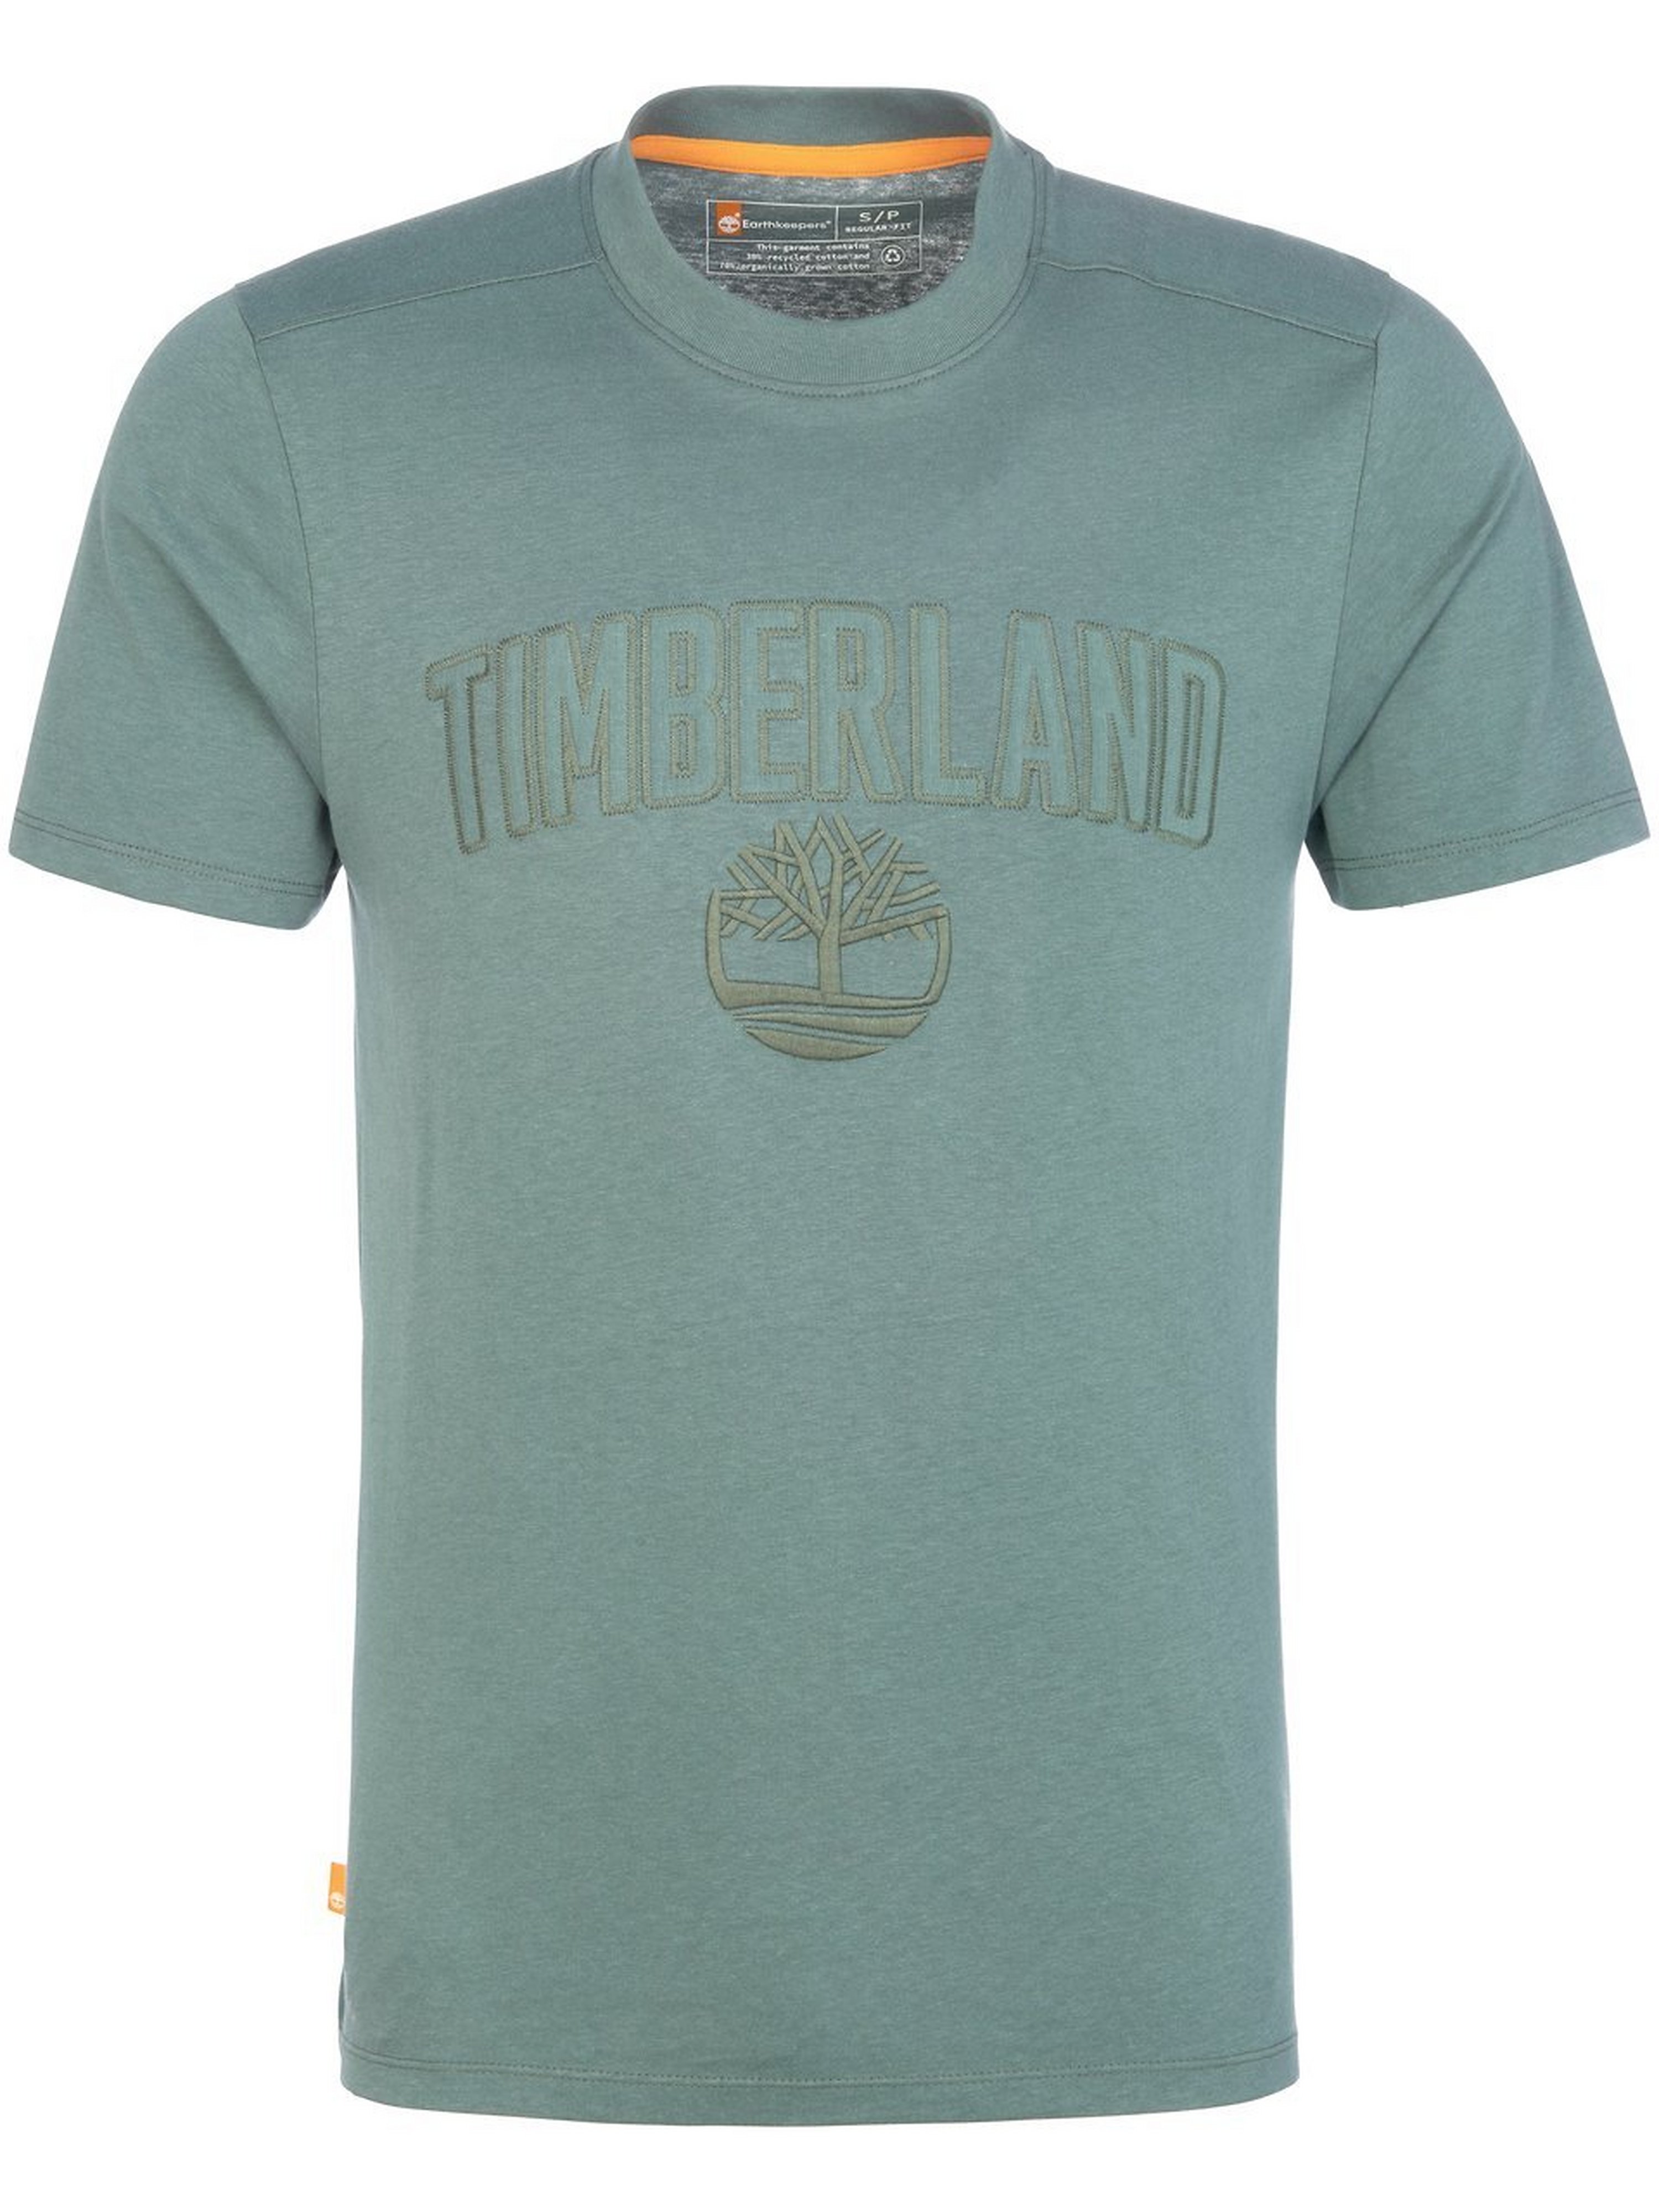 T-Shirt Timberland grün Größe: 48